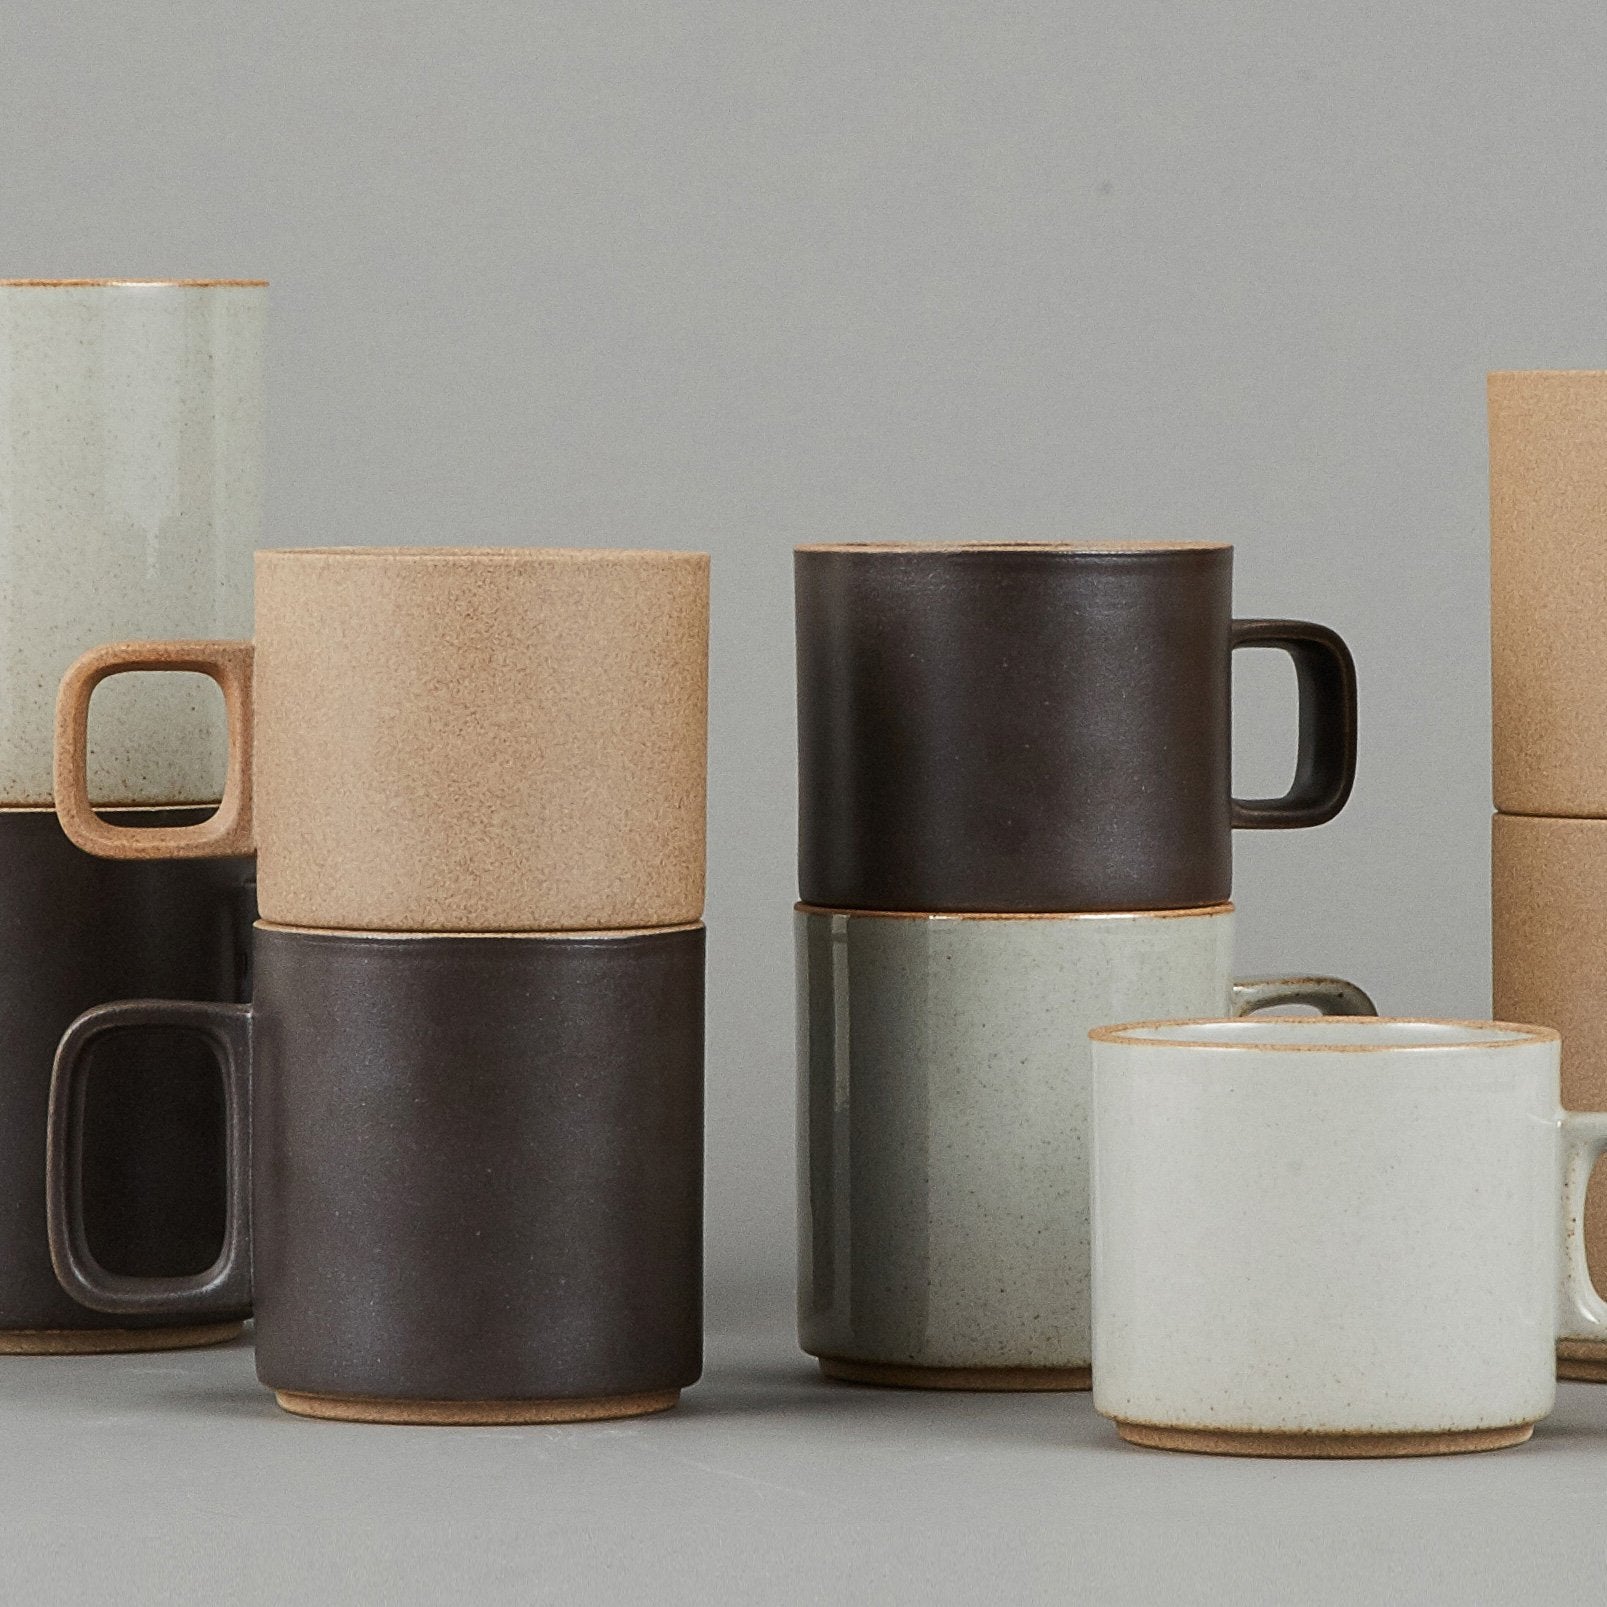 Hasami Porcelain - Mug, Black, 15 oz